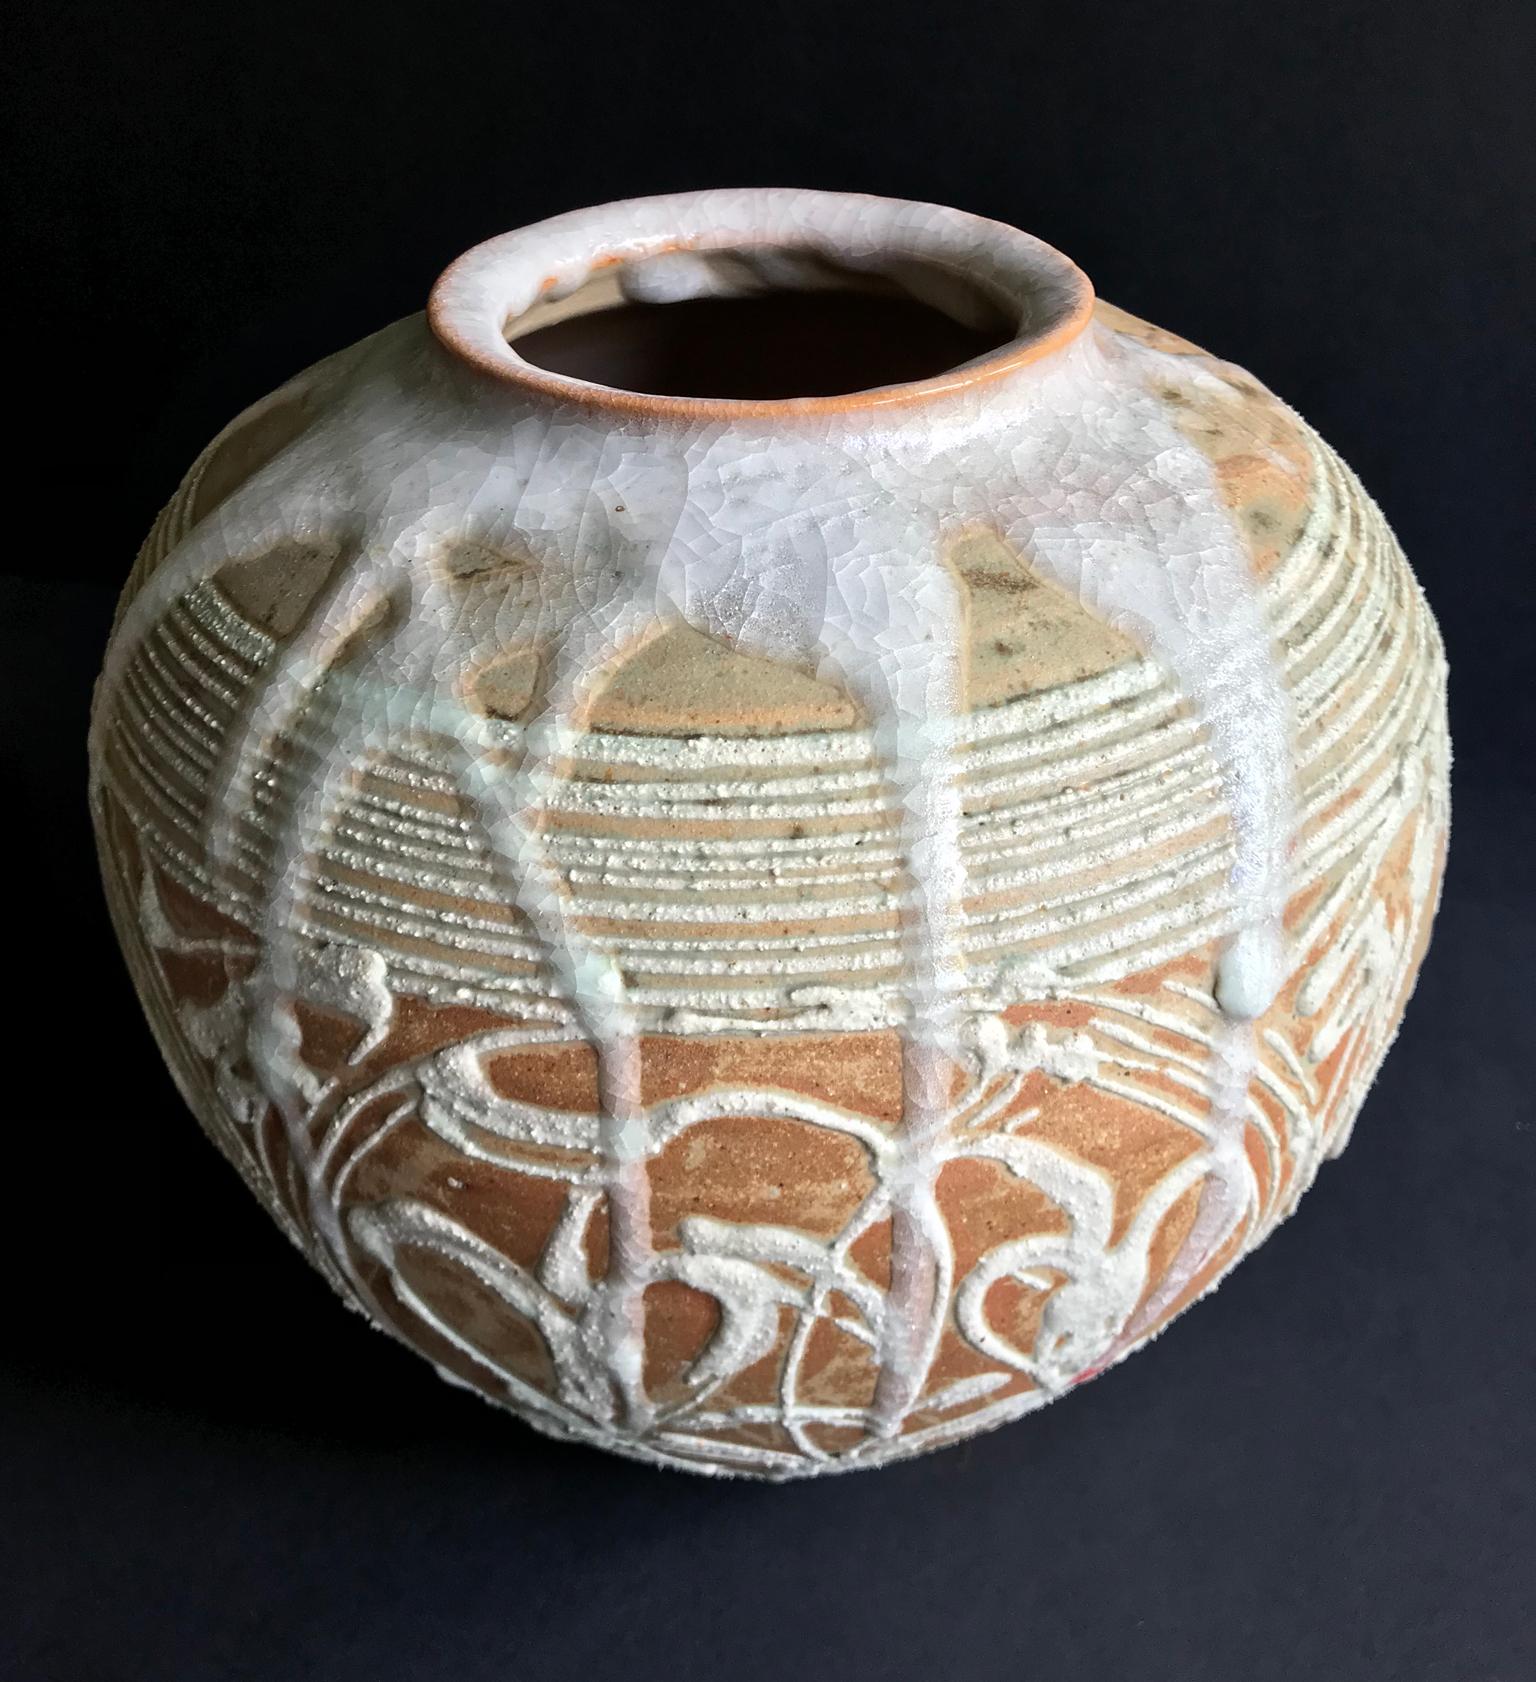 Japanischer Keramiktopf mit einem Kyoto-Etikett. Siegel des Herstellers, nicht identifiziert, aber möglicherweise Mashiko.

Steingut mit tropfender Craquelé-Glasur.

Originalverpackung.

um 1970.